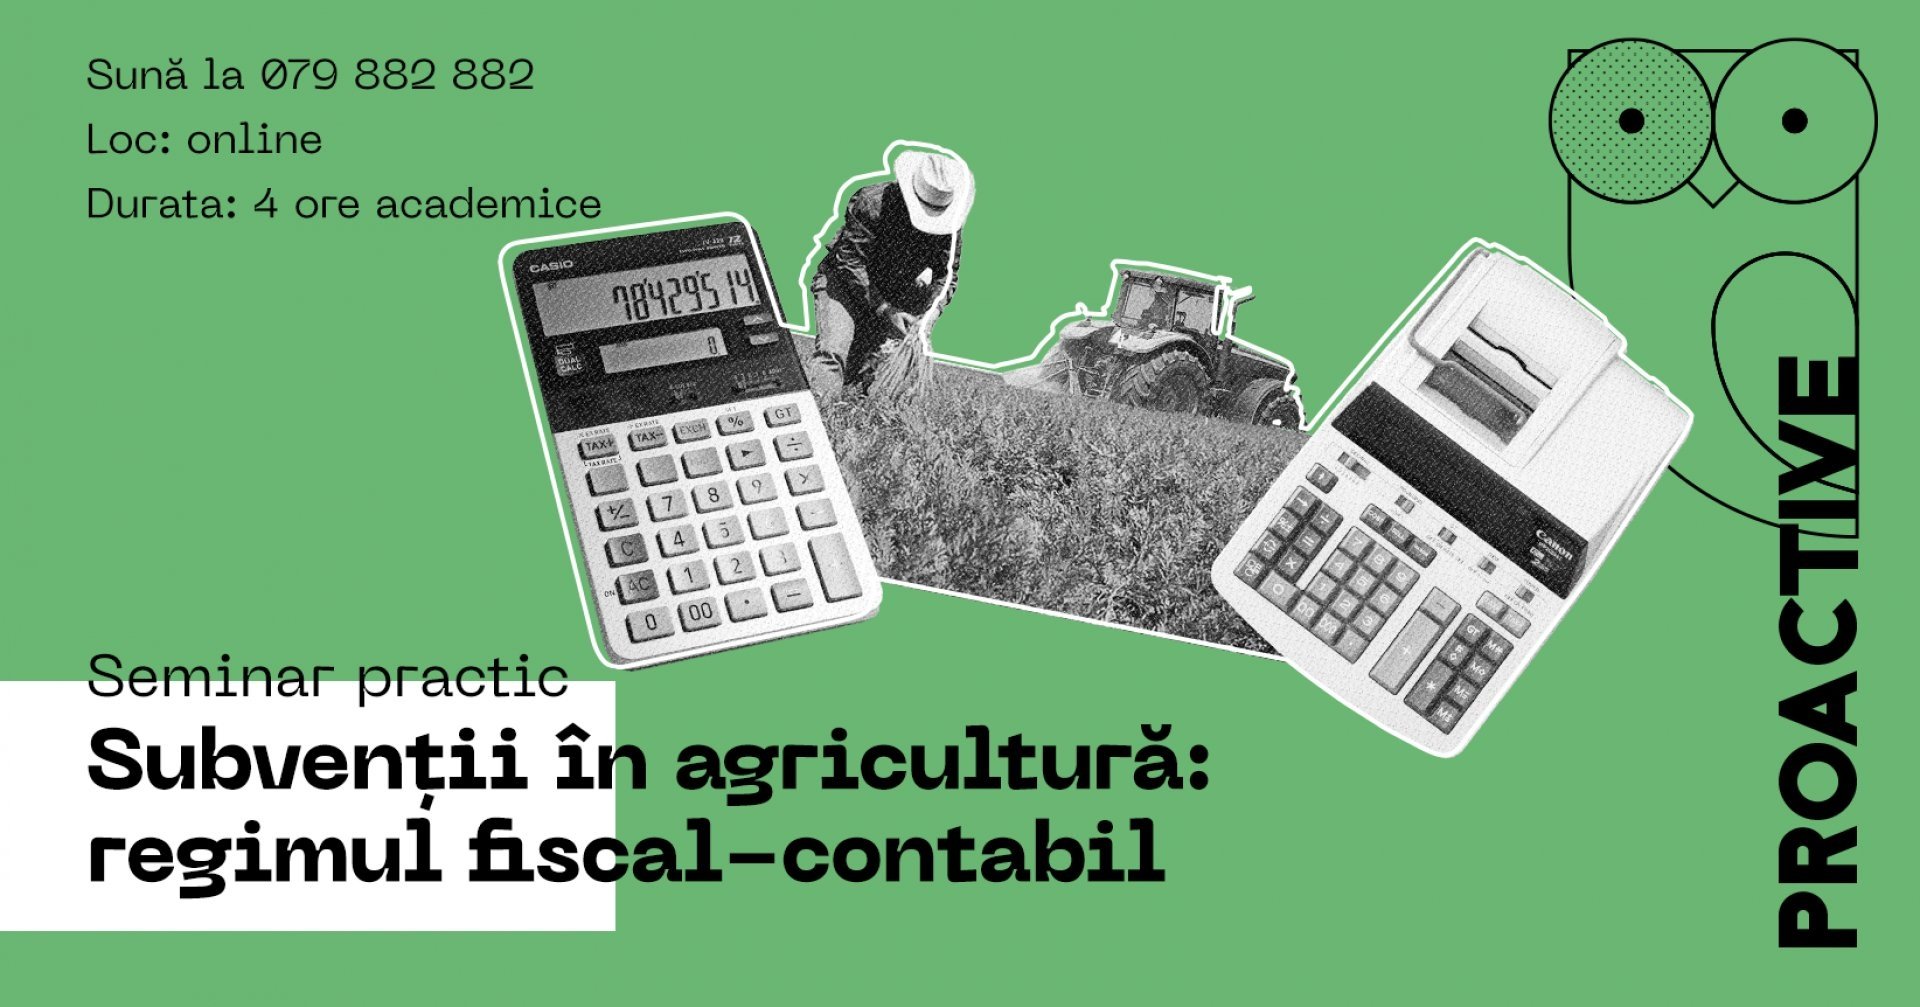 Seminar practic ”Subvenții în agricultură: regimul fiscal-contabil”